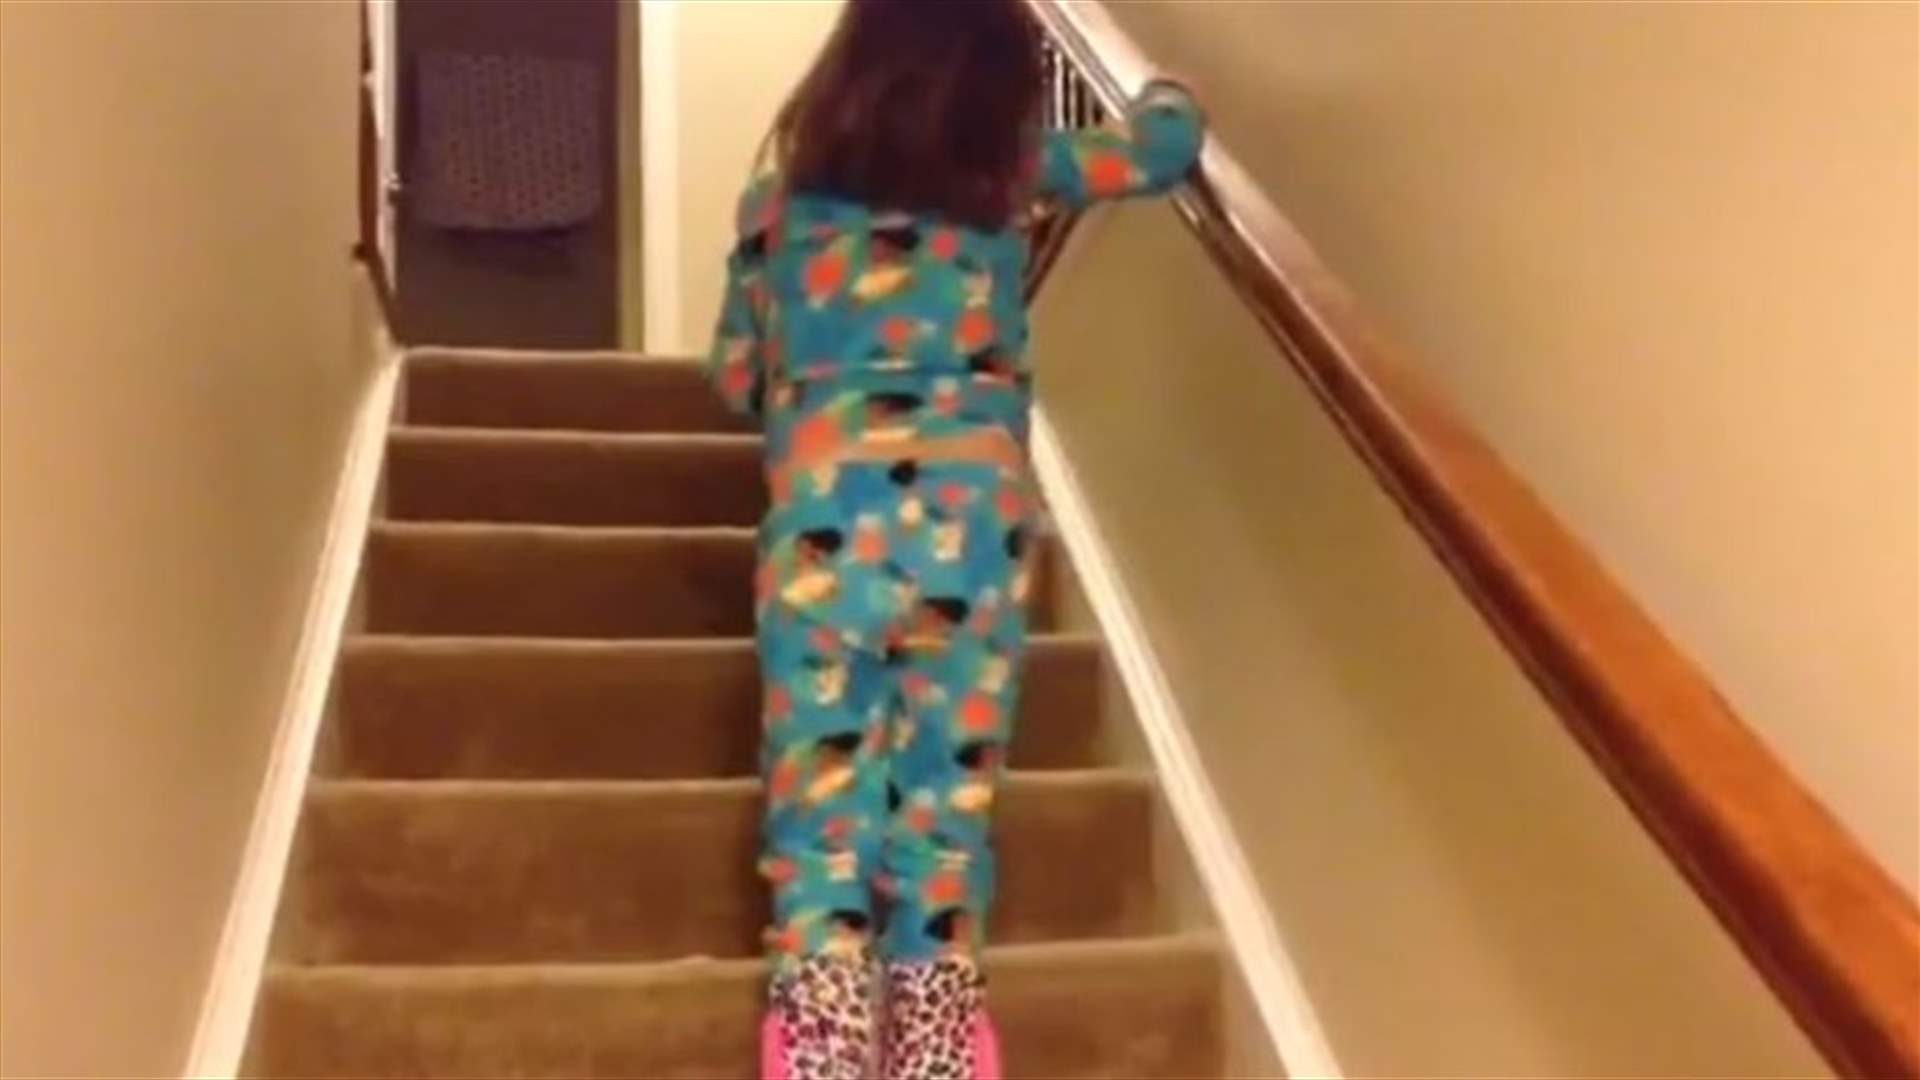 بالفيديو: طفلة تتحدى الألم وإصابتها بمرض السرطان... ووالدها يوثّق اللحظة!